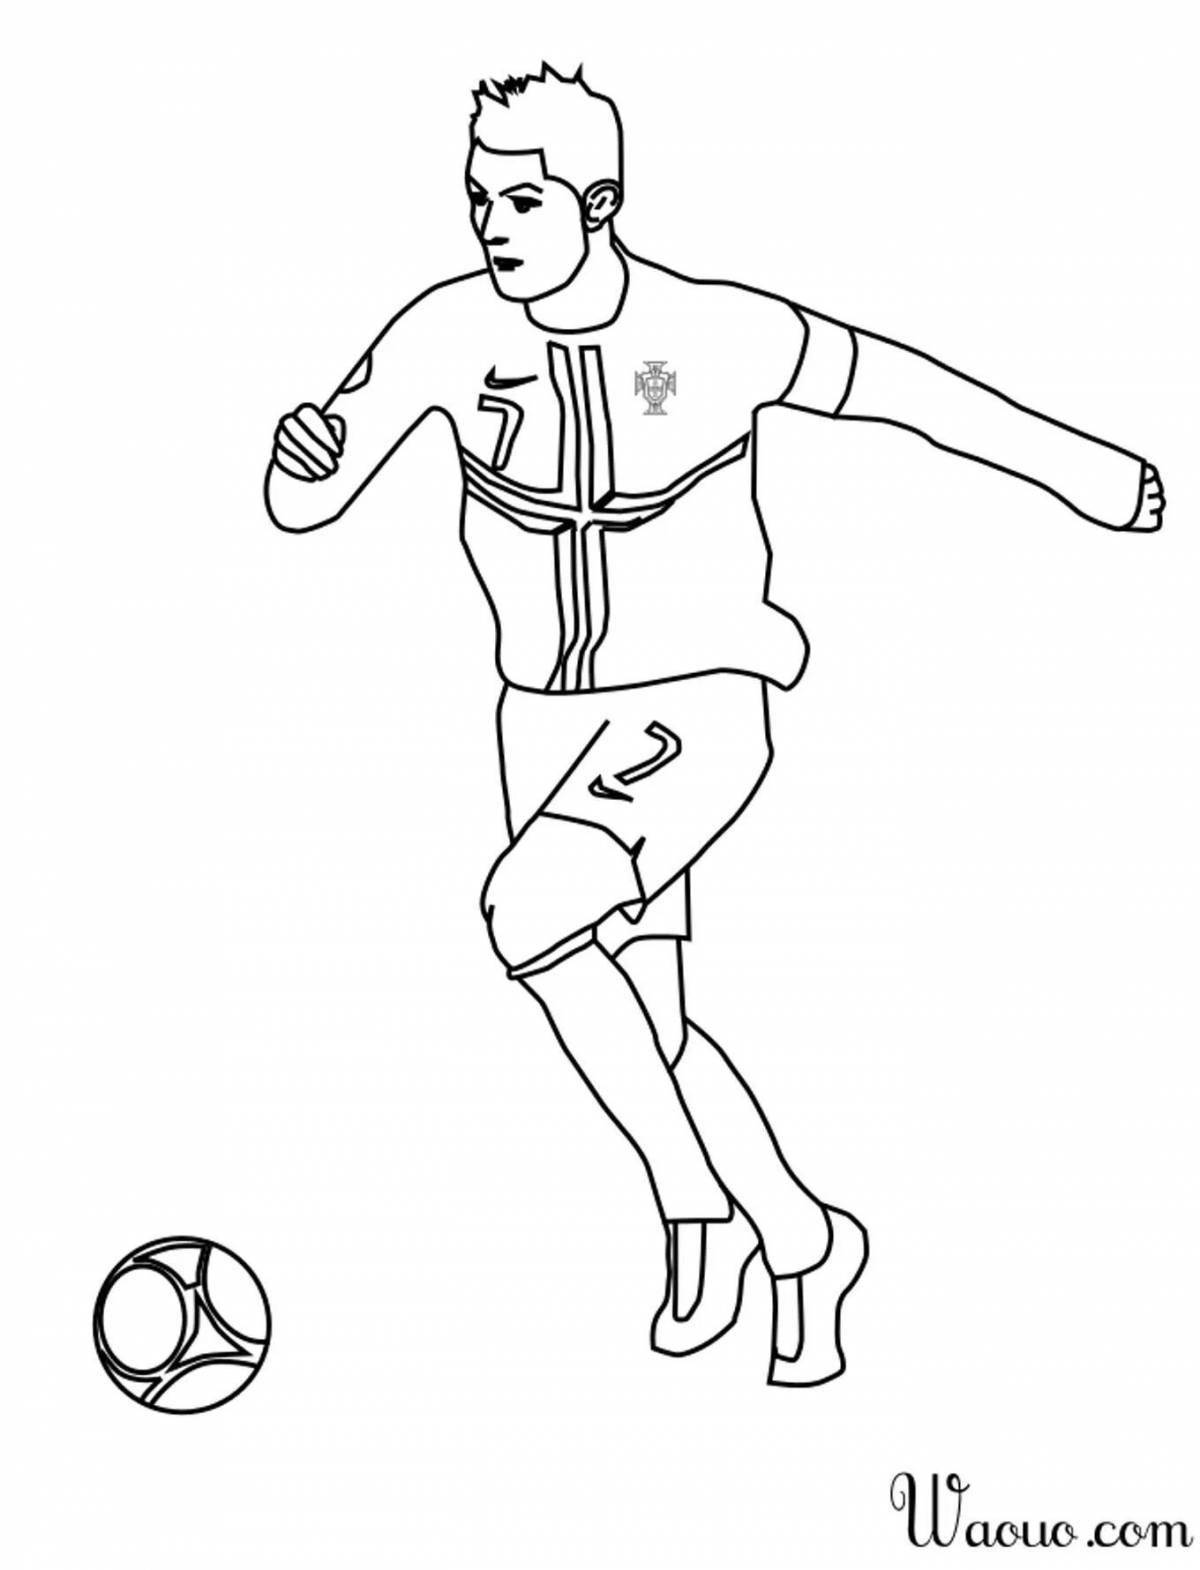 Ronaldo humorous coloring book